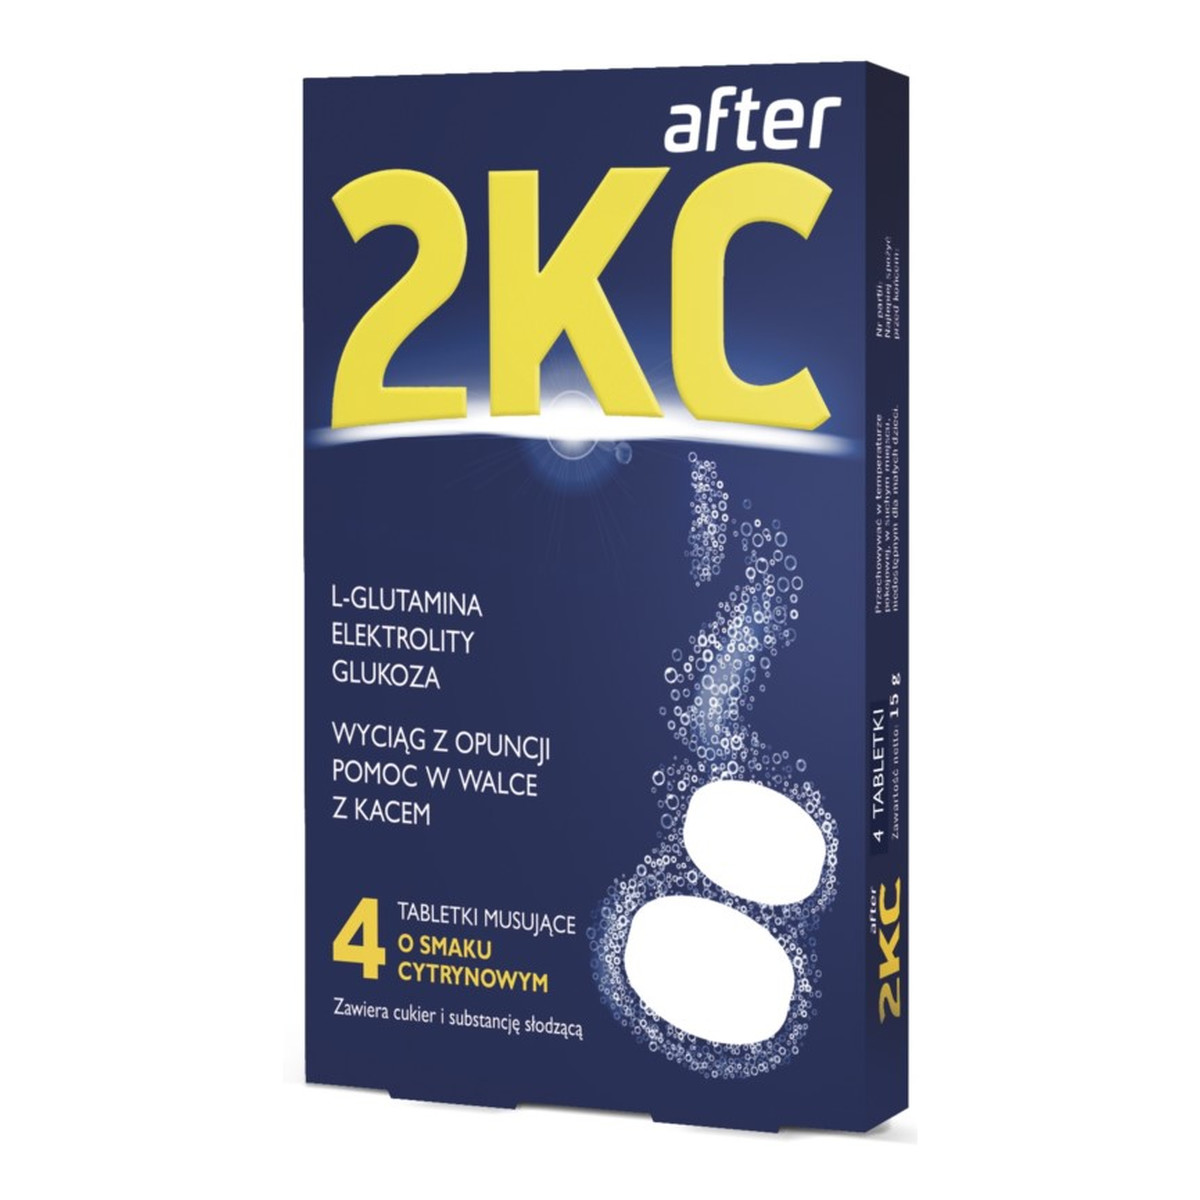 2KC L-glutamina elektrolity glukoza pomoc w walce z kacem 4 tabletki musujące